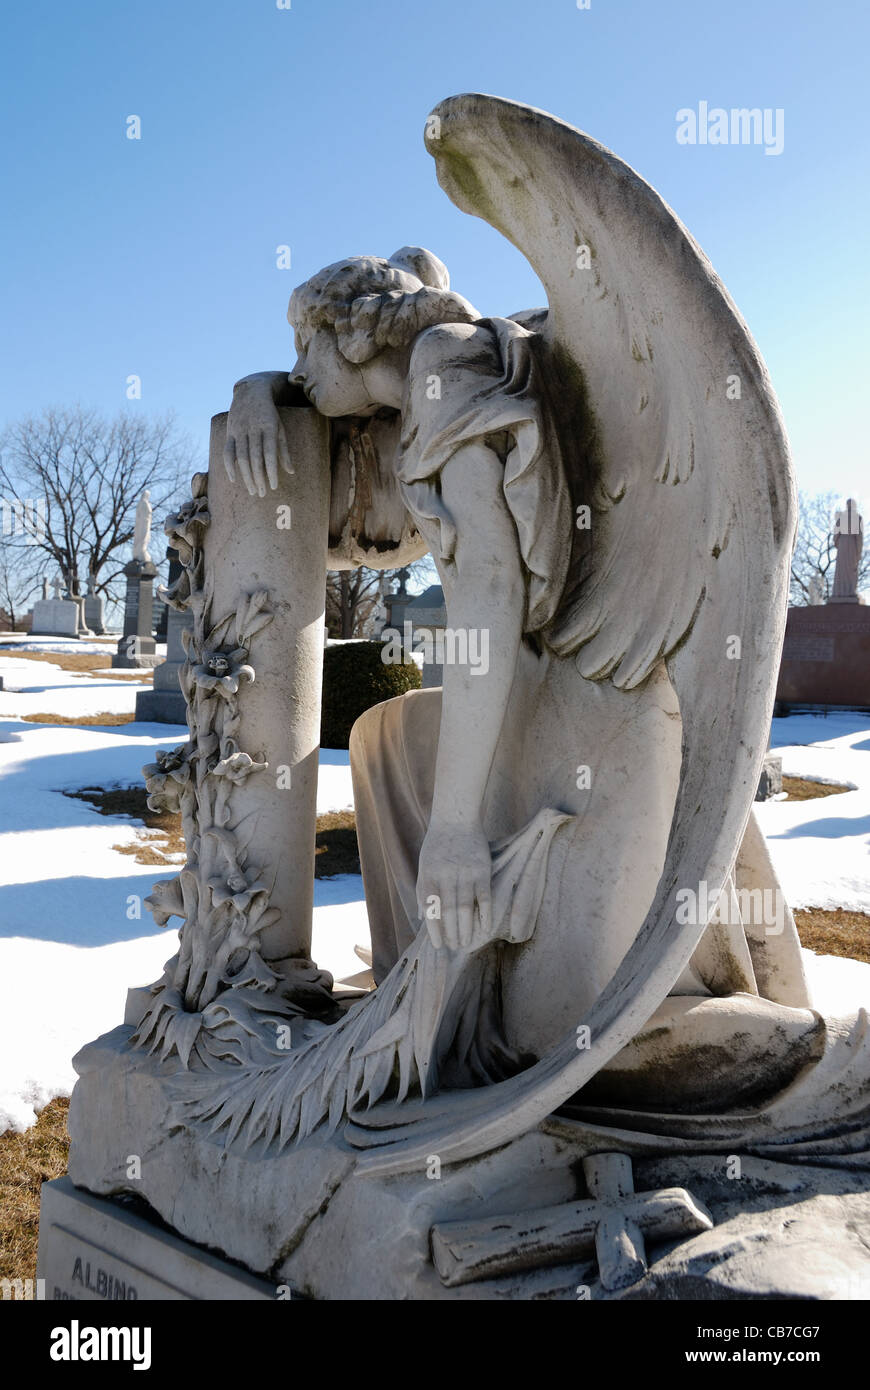 Ein aufwändiges und detailliertes Friedhof-Denkmal eines Engels, der weint. Stockfoto